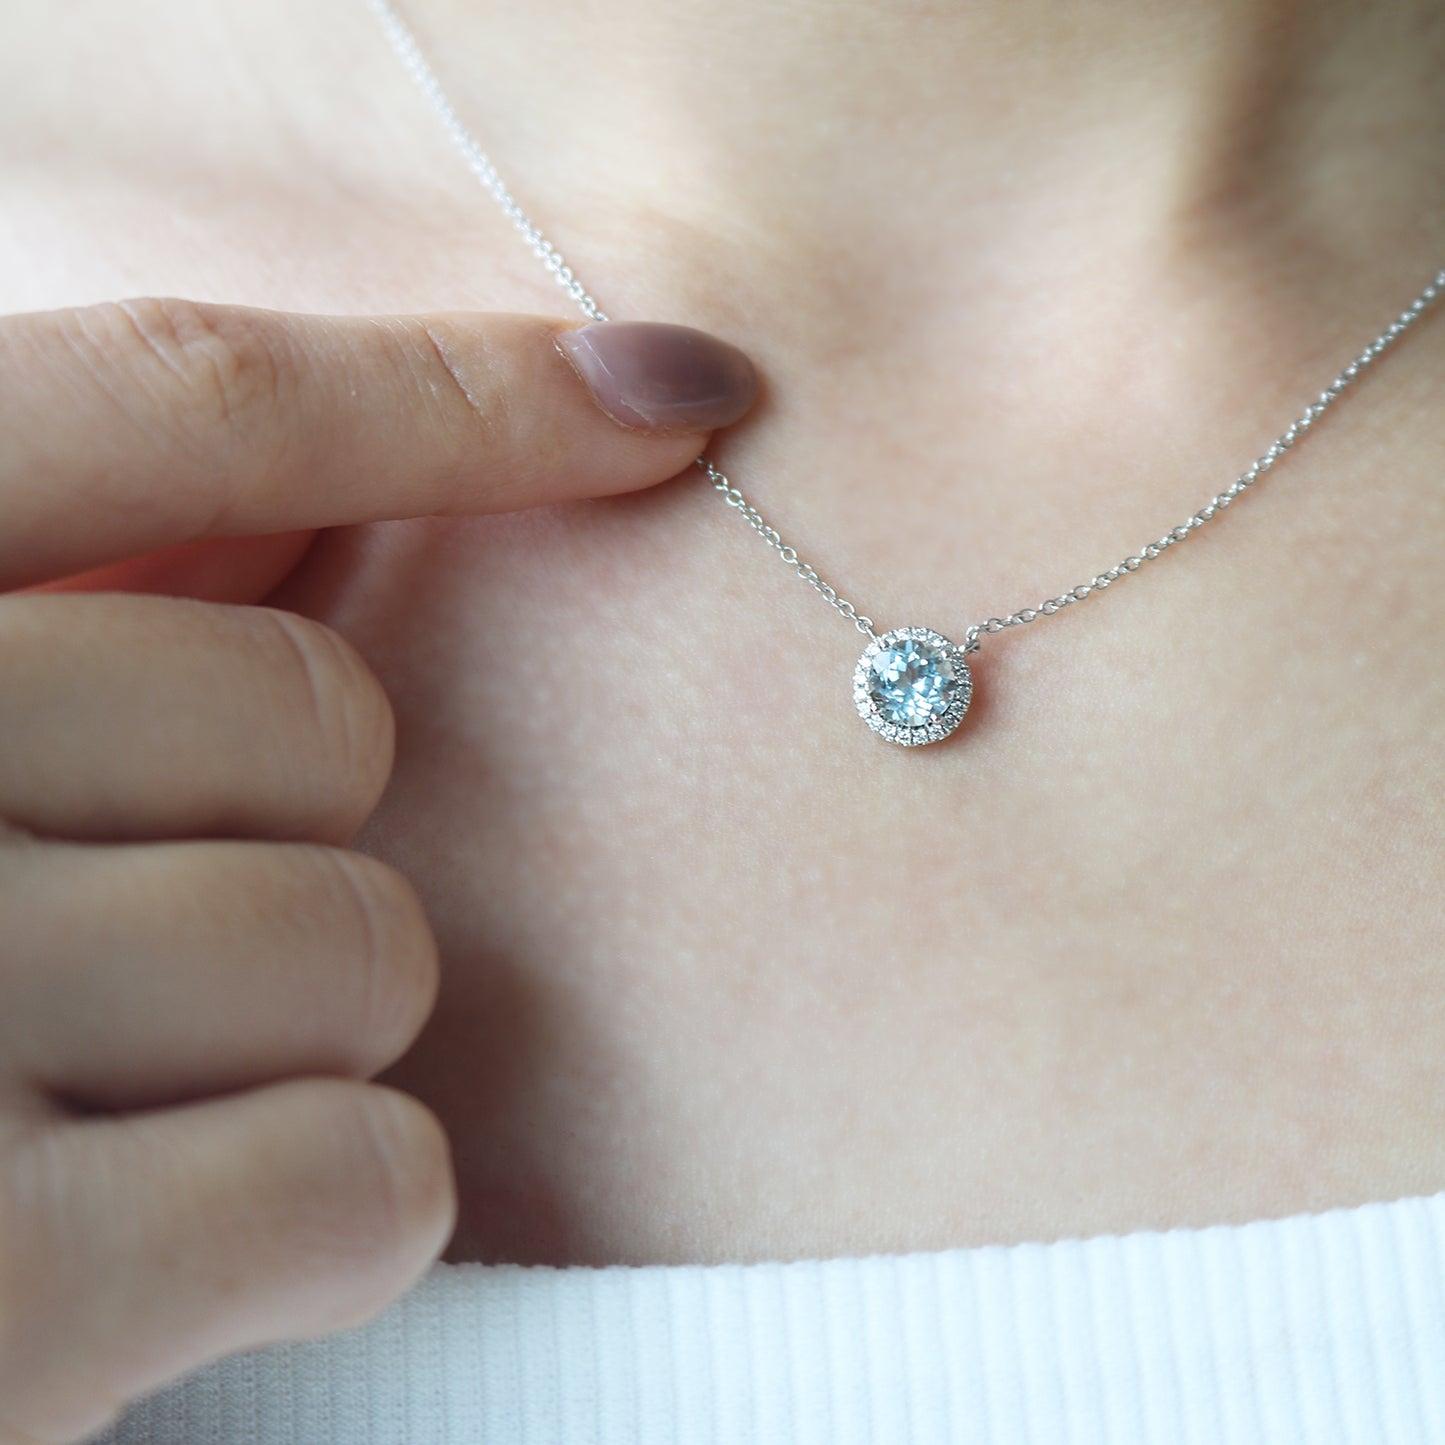 18k White Gold Aquamarine Halo Diamond Necklace